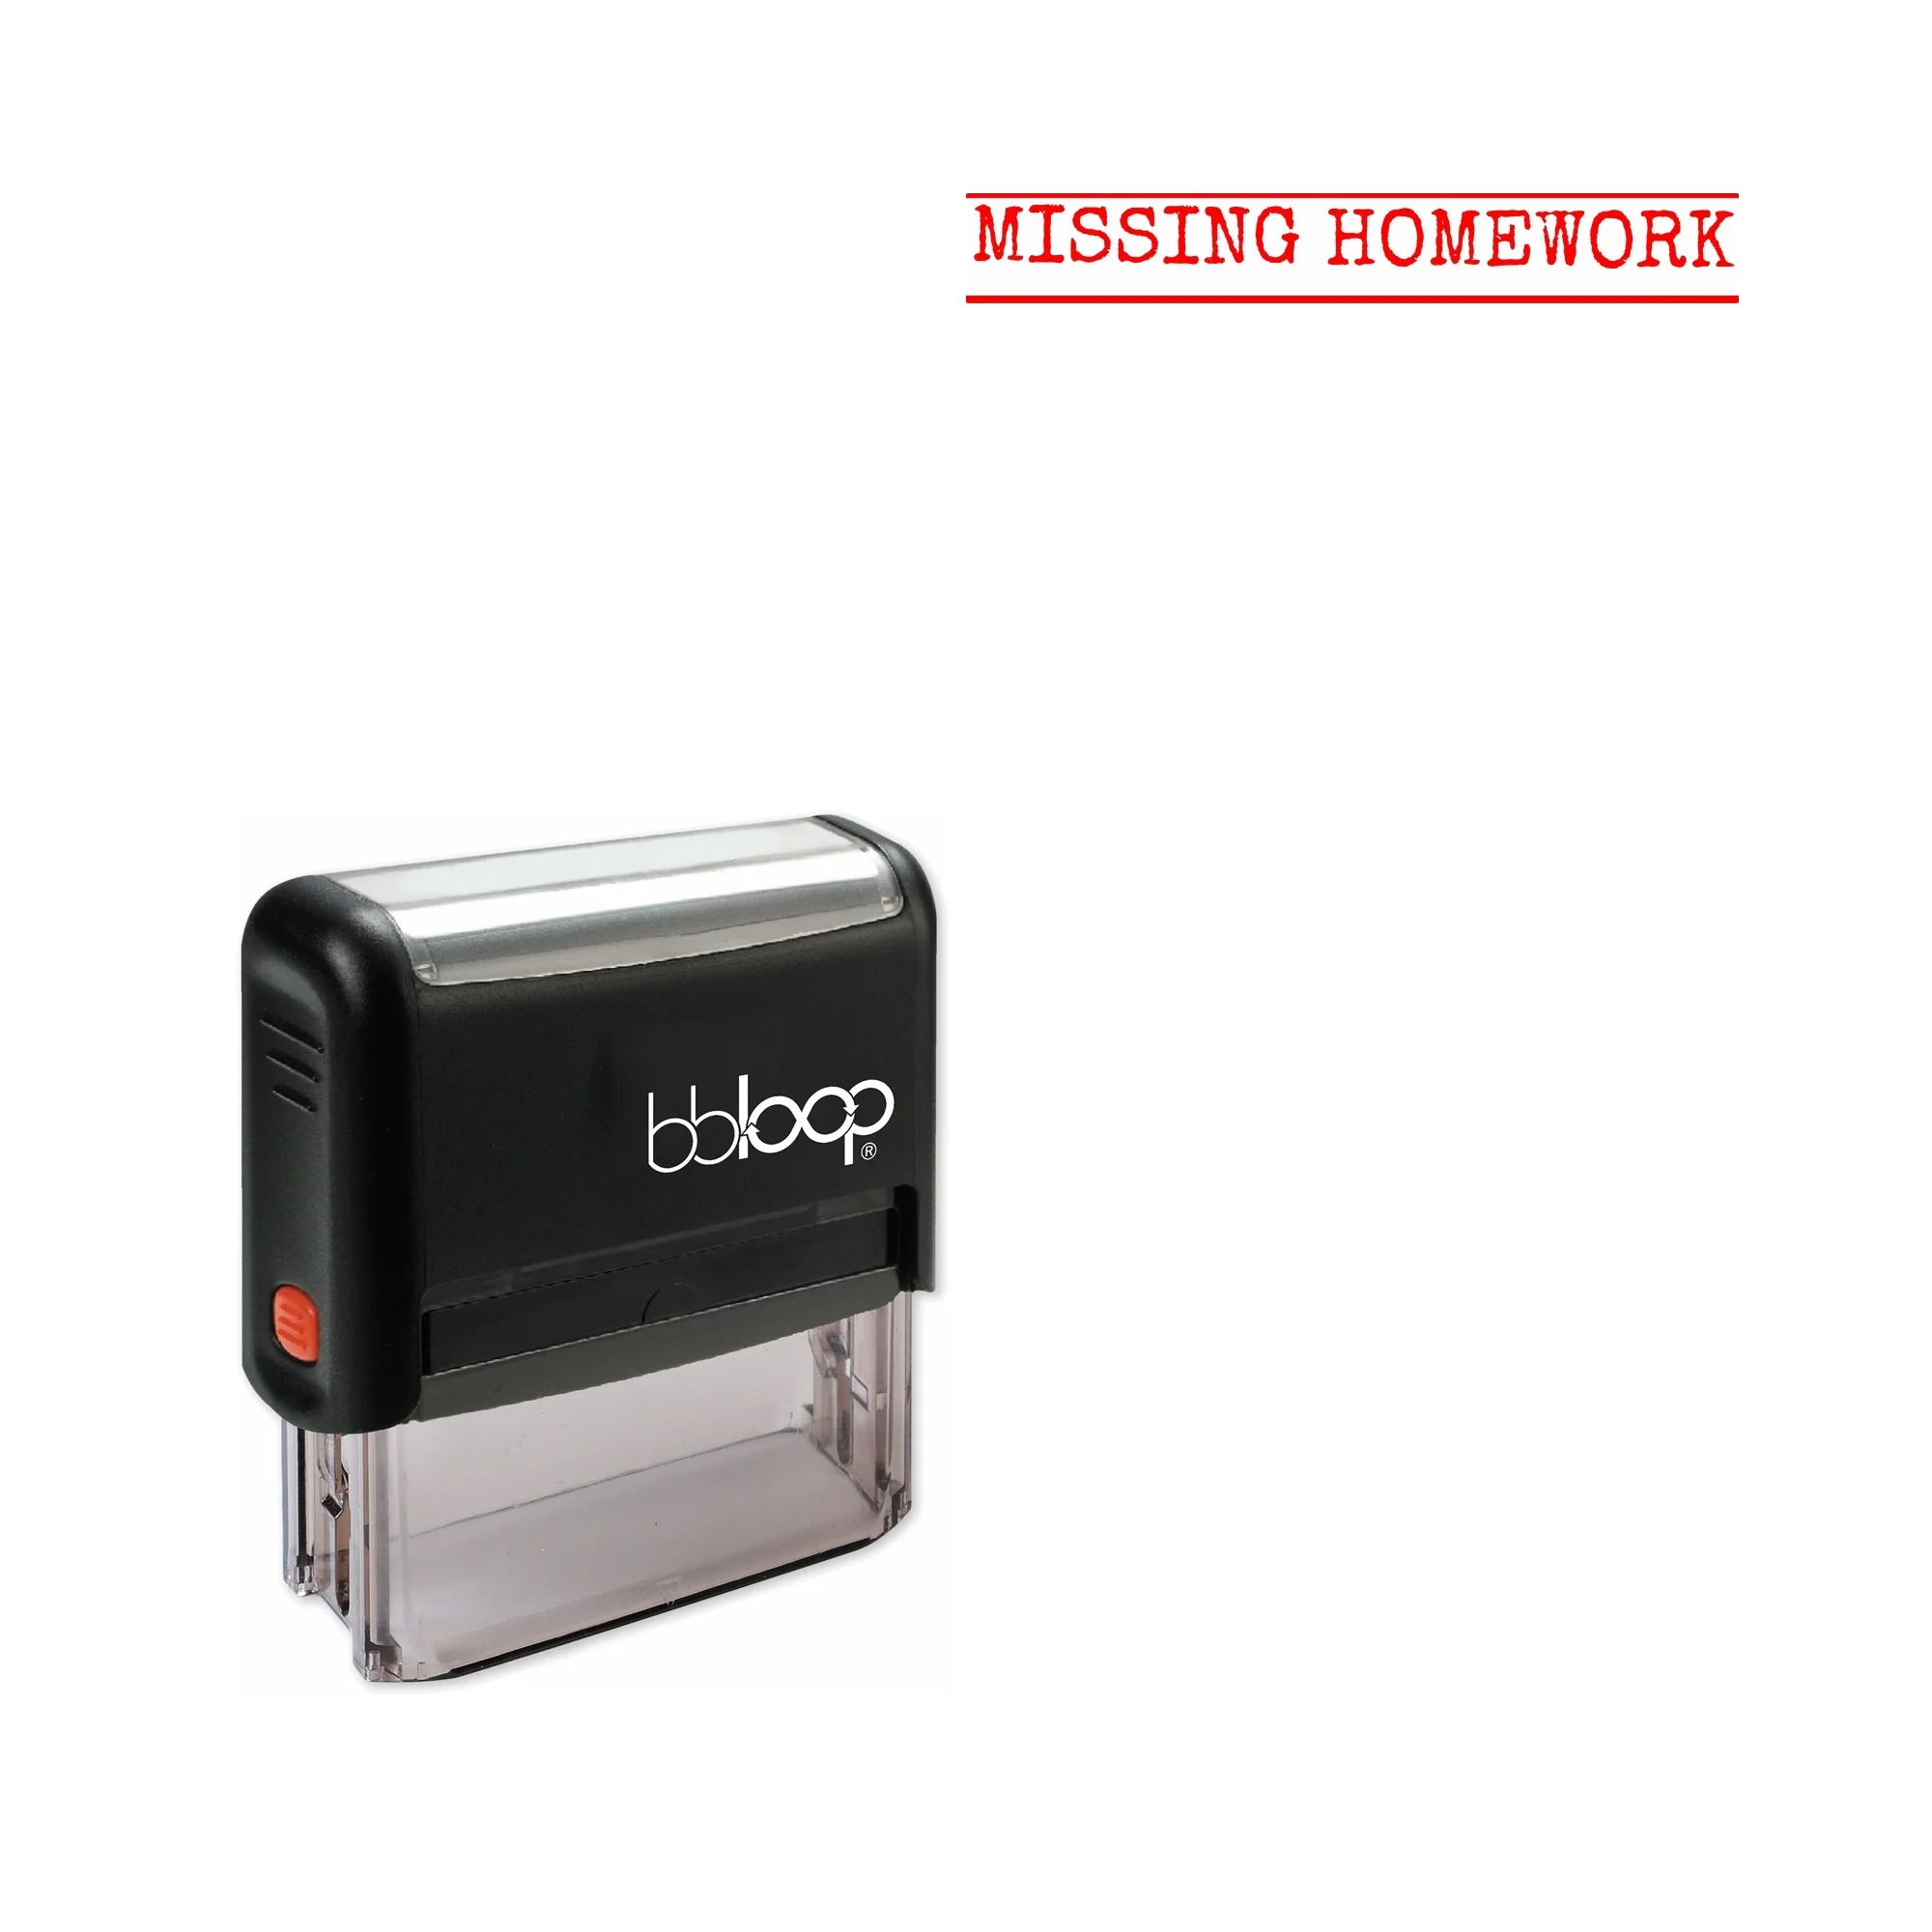 

Bbloop «отсутствует домашняя работа» самозаполняющаяся офисная печать, прямоугольная машинка